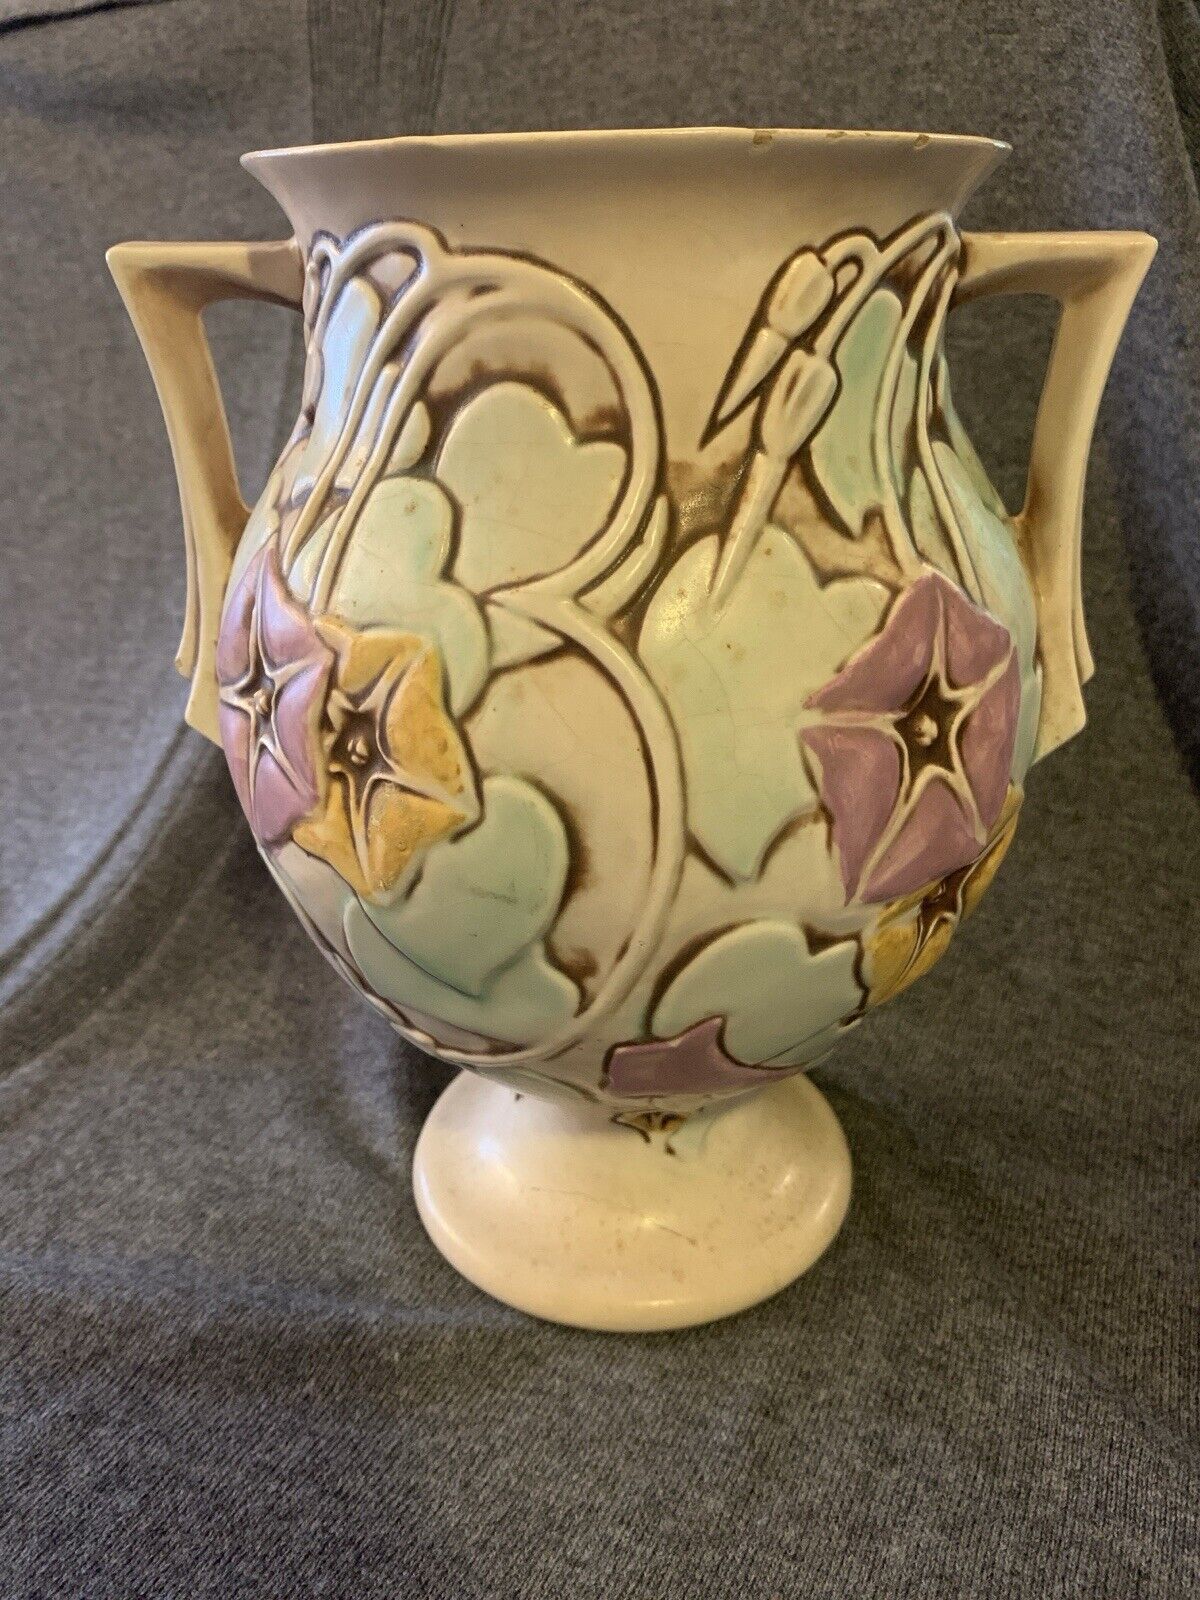 Roseville Vase Morning Glory White 1935 Vintage Art Deco Pottery Ceramic 728-9